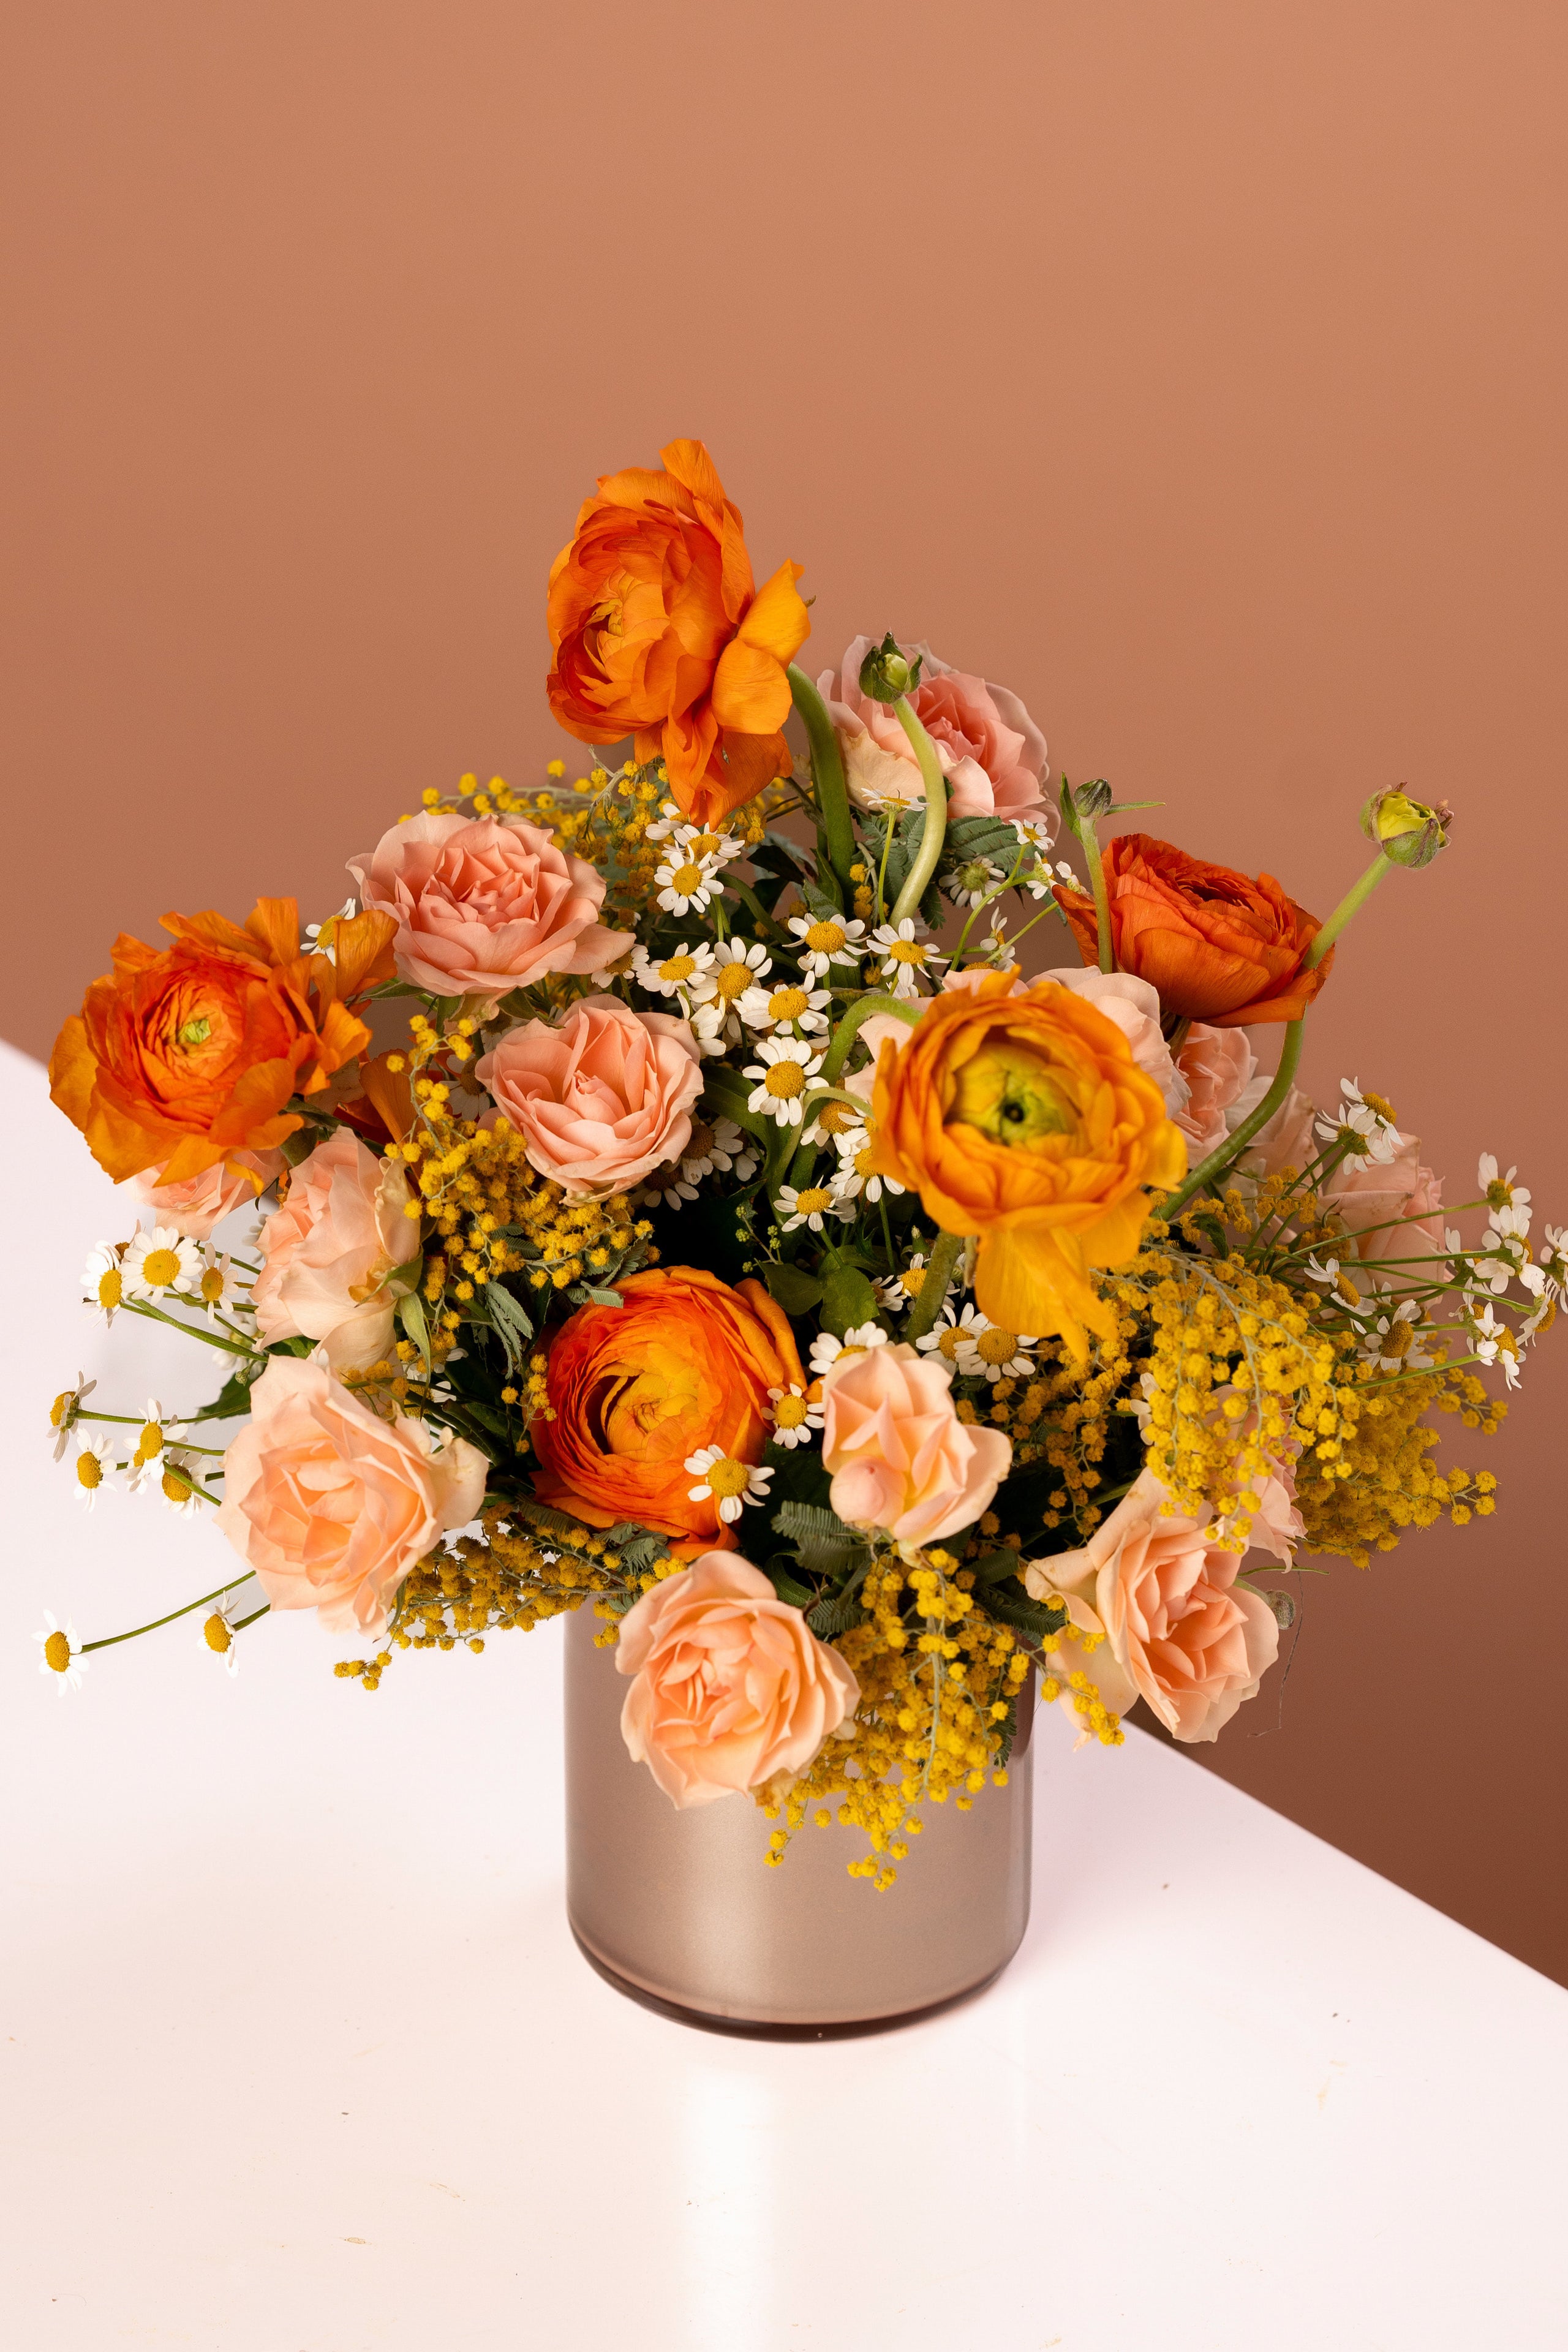 Sip N Bloom - Floral Events & Flower Arranging Classes